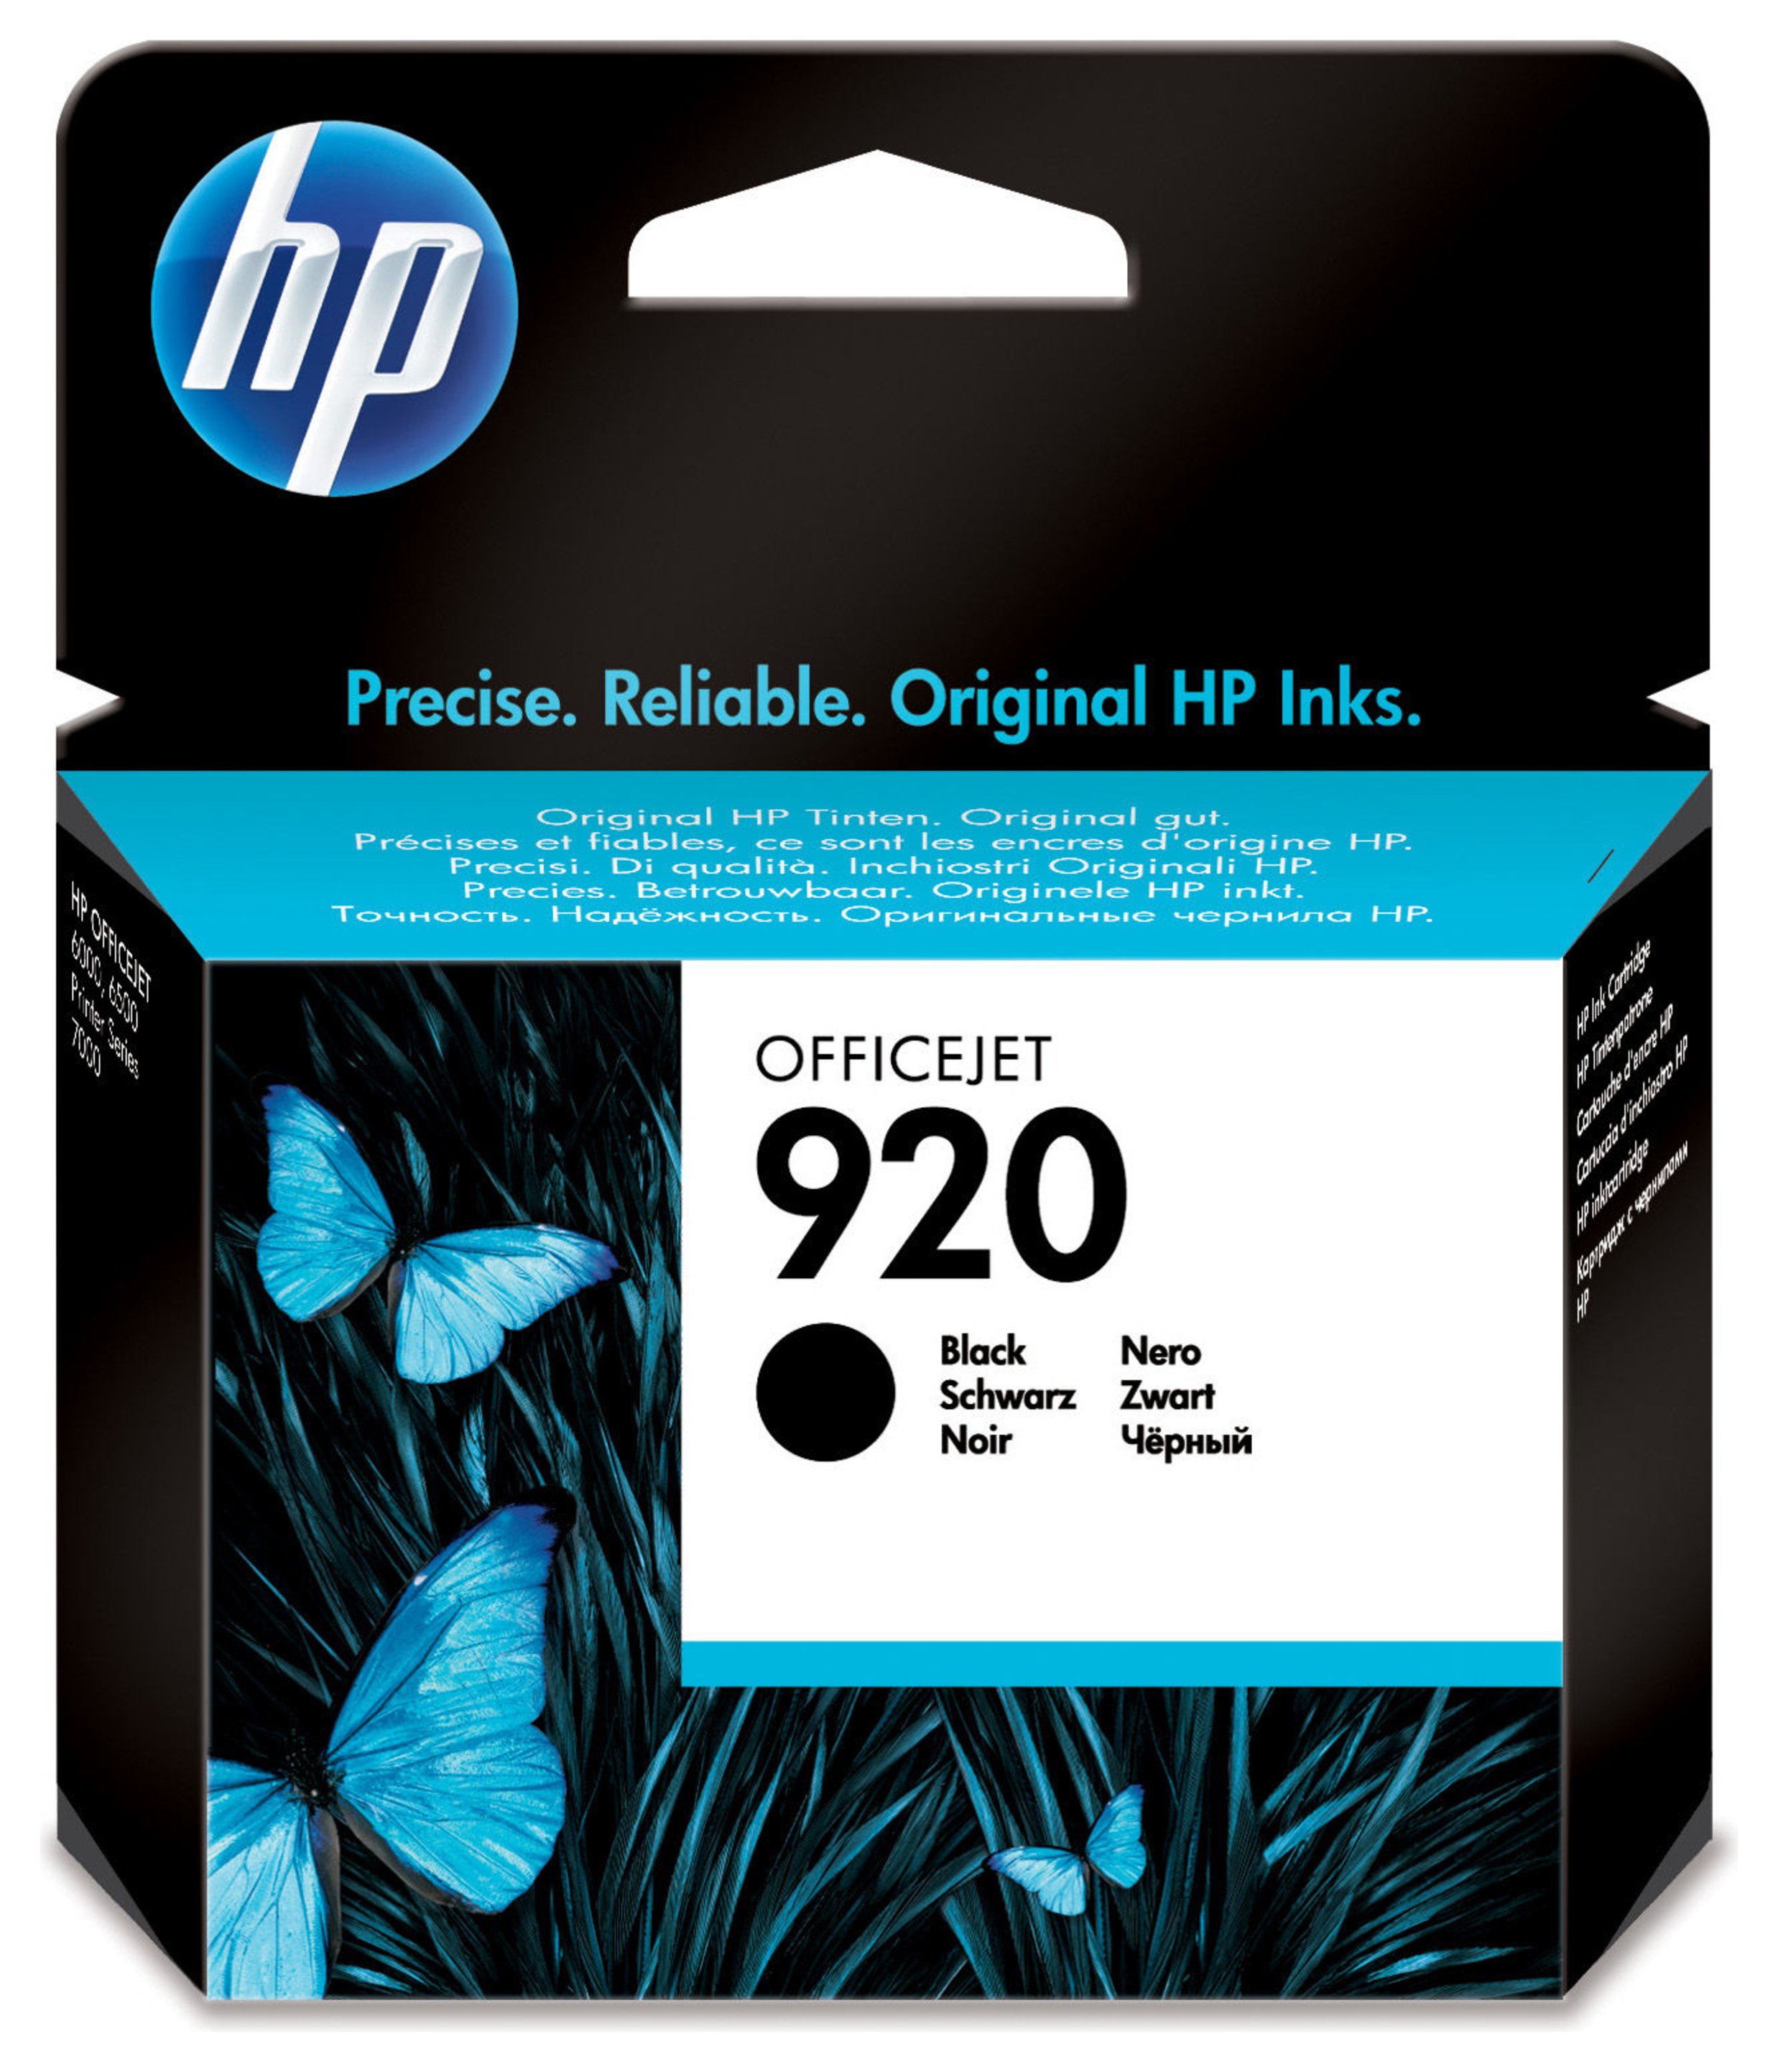 HP 920 Black Ink Cartridge